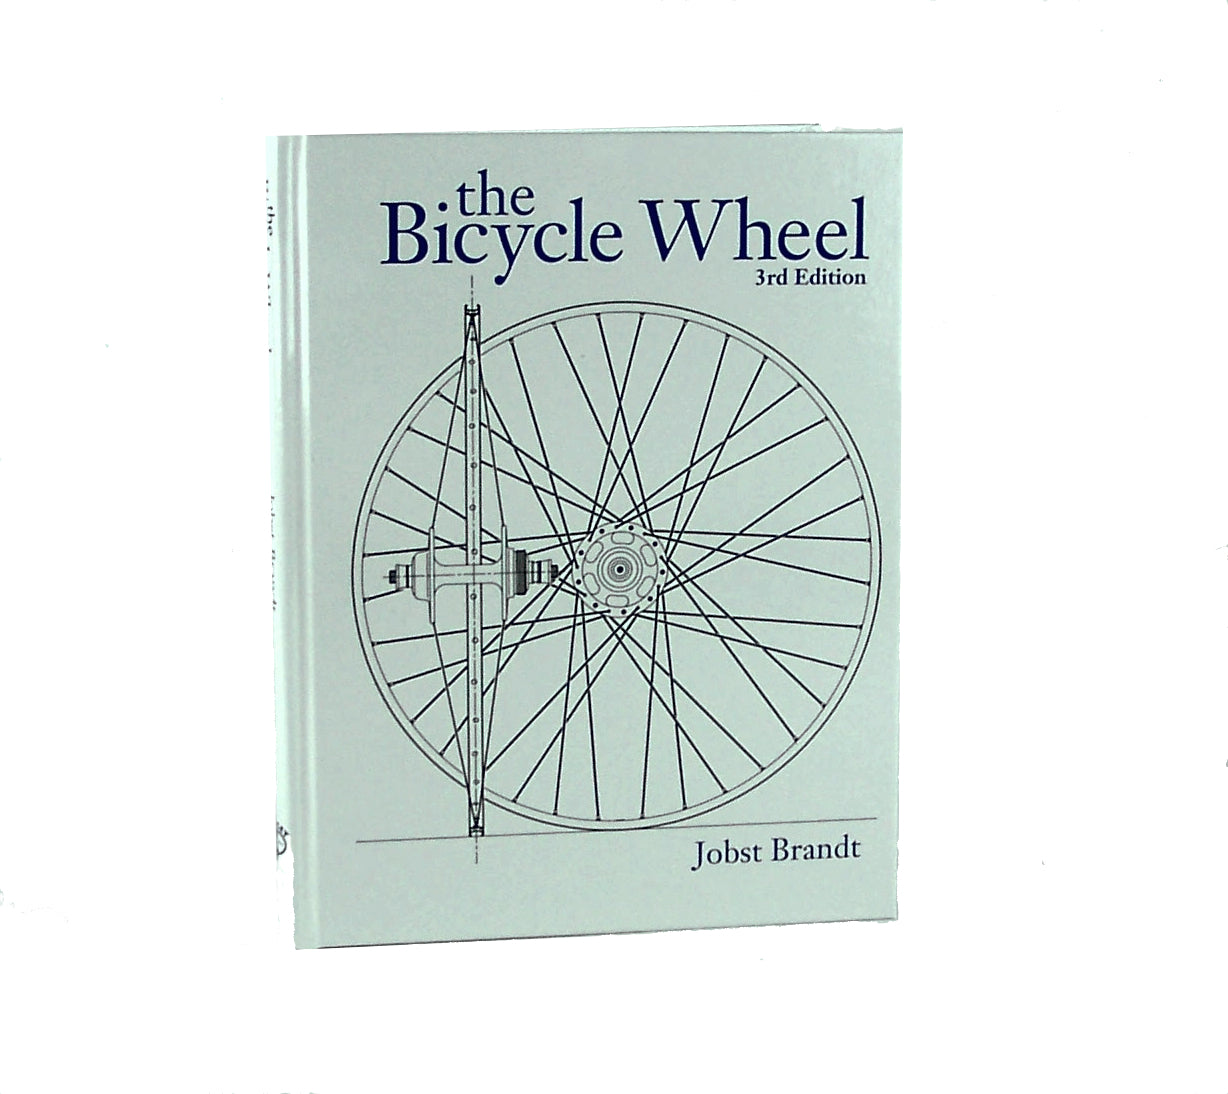 Jobst Brandt's The Bicycle Wheel